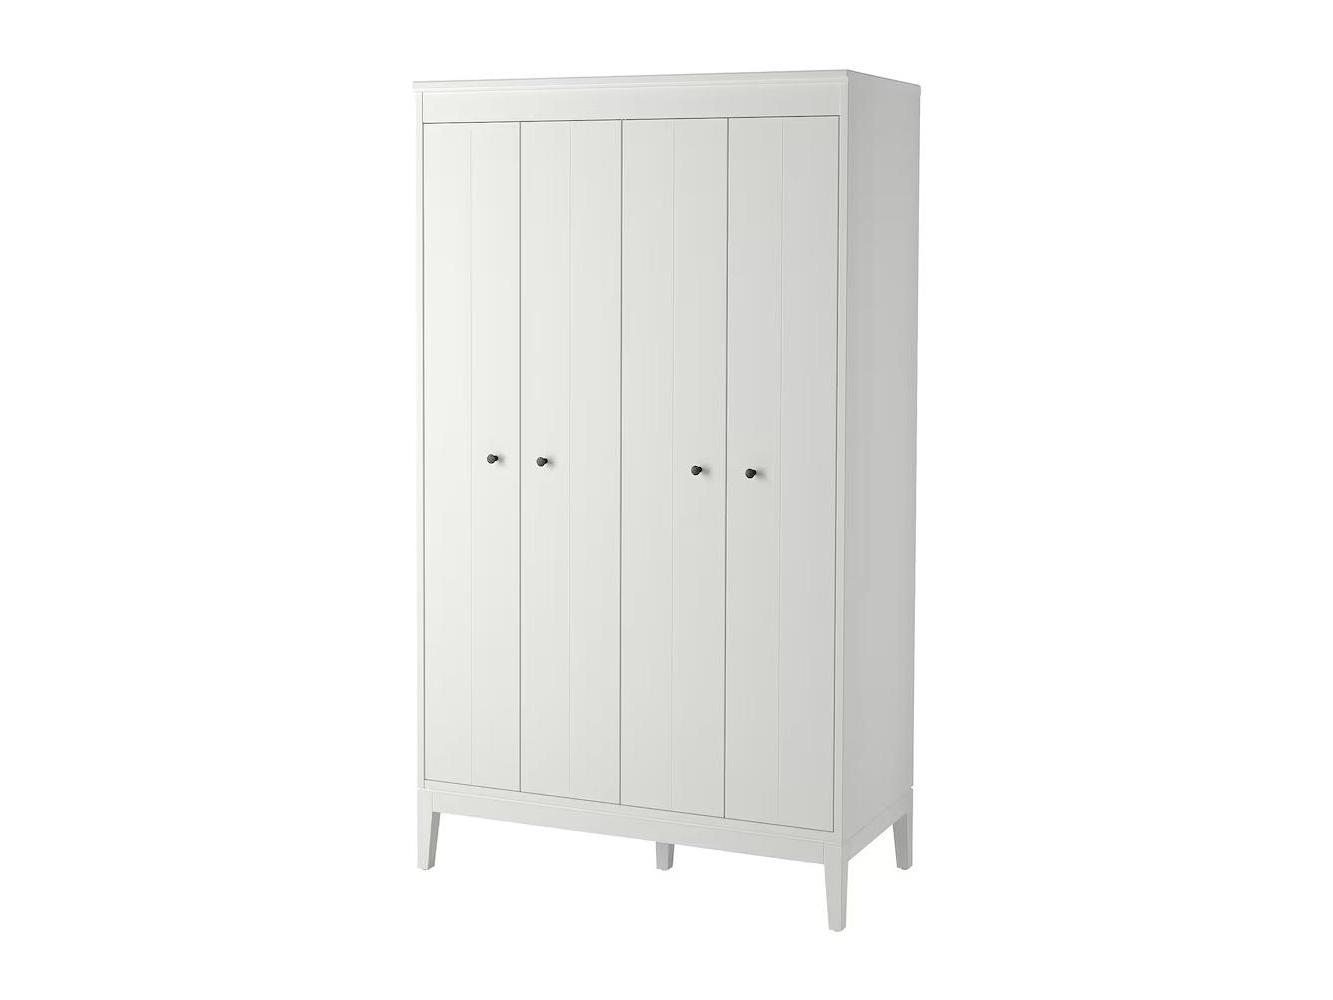 Распашной шкаф Иданаc 14 white ИКЕА (IKEA) изображение товара